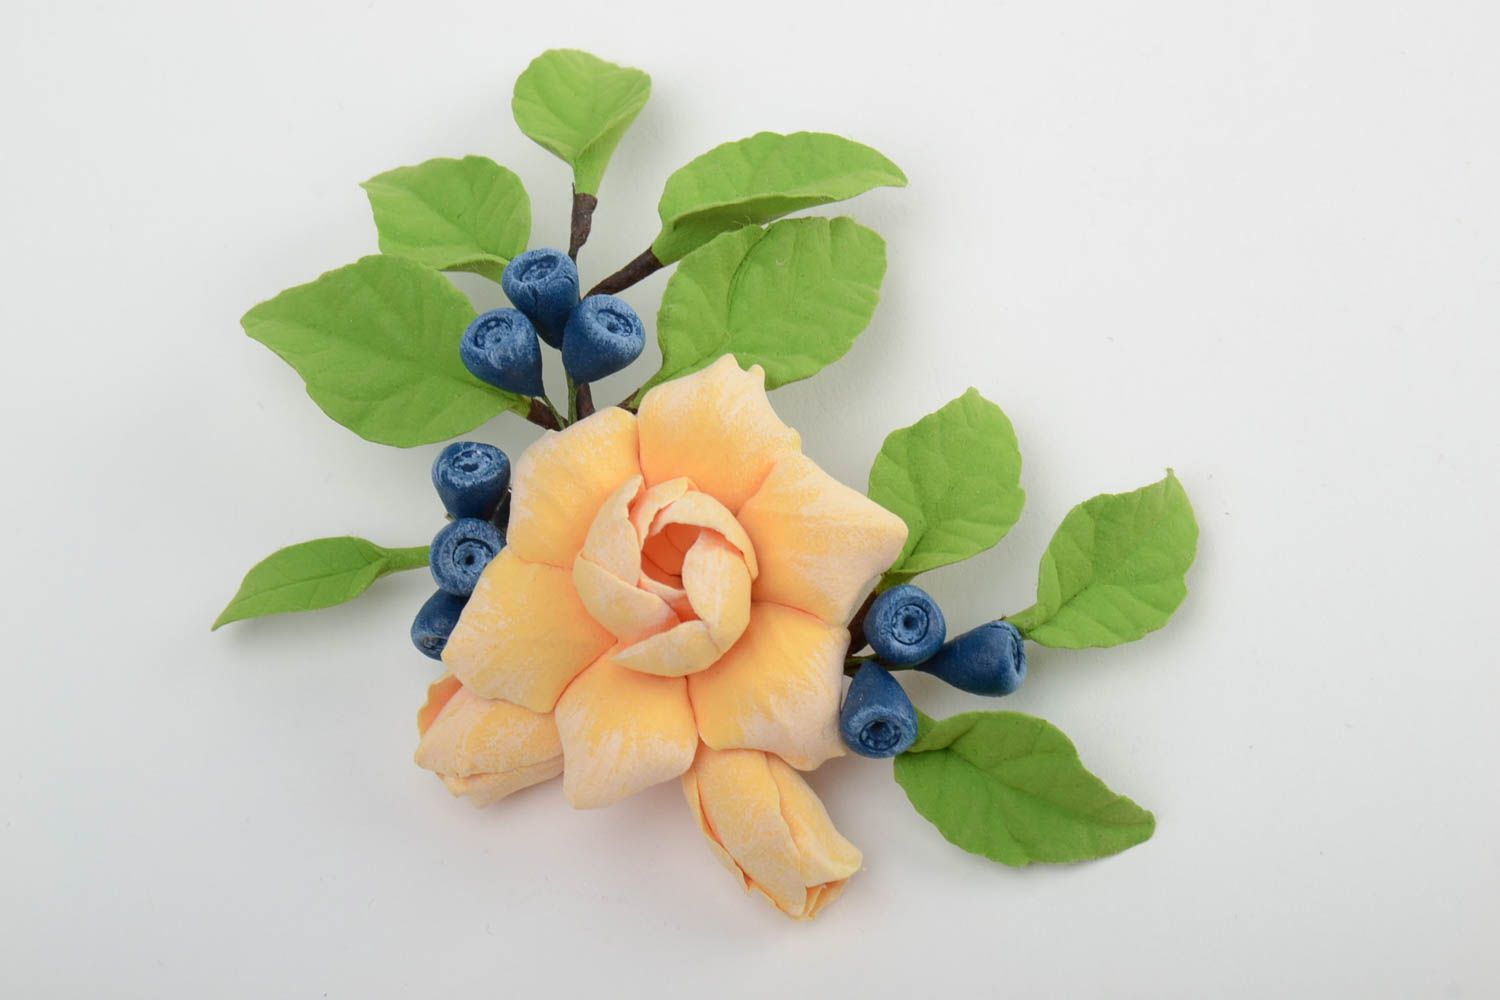 Брошь из самозастывающей глины в виде цветка цветная красивая ручной работа фото 3